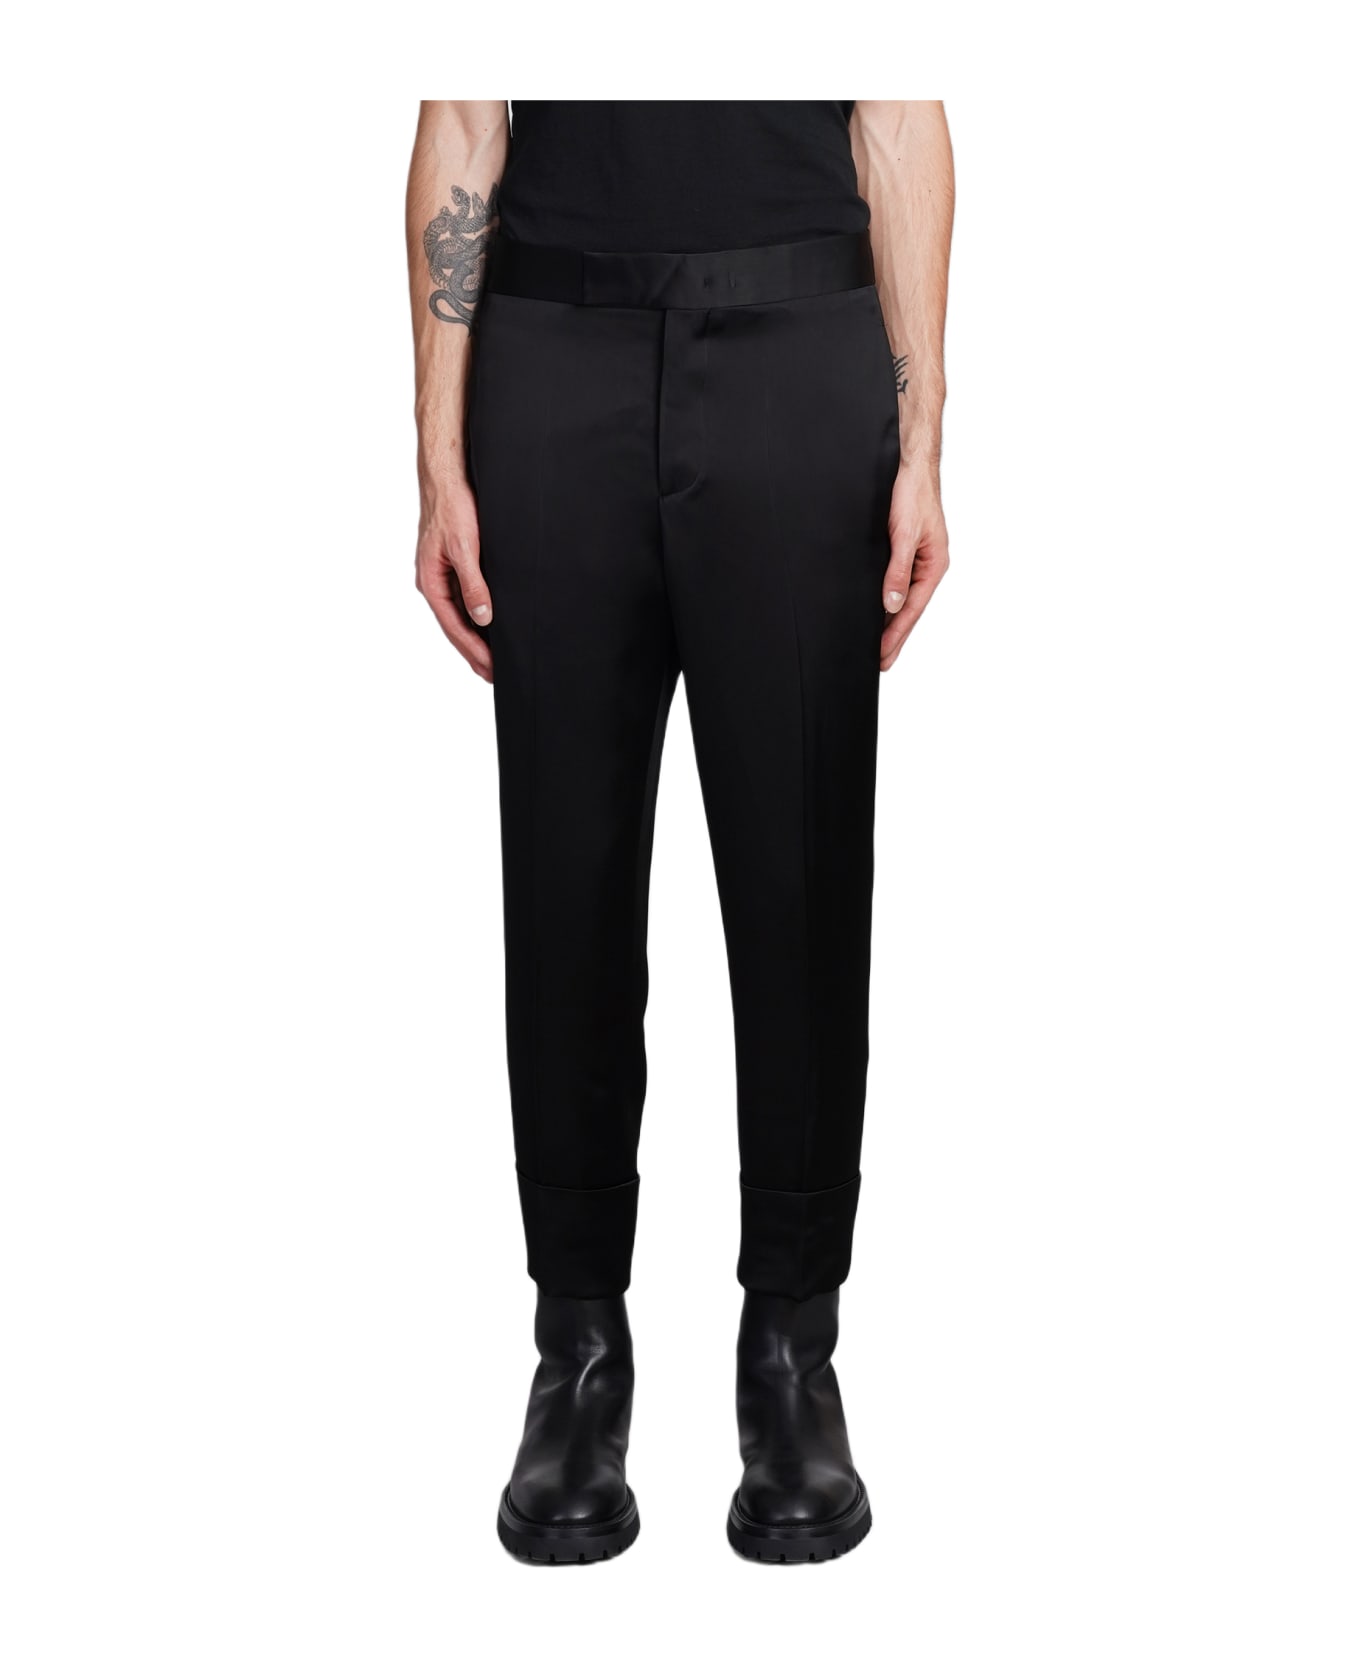 Sapio N7 Pants In Black Viscose - black